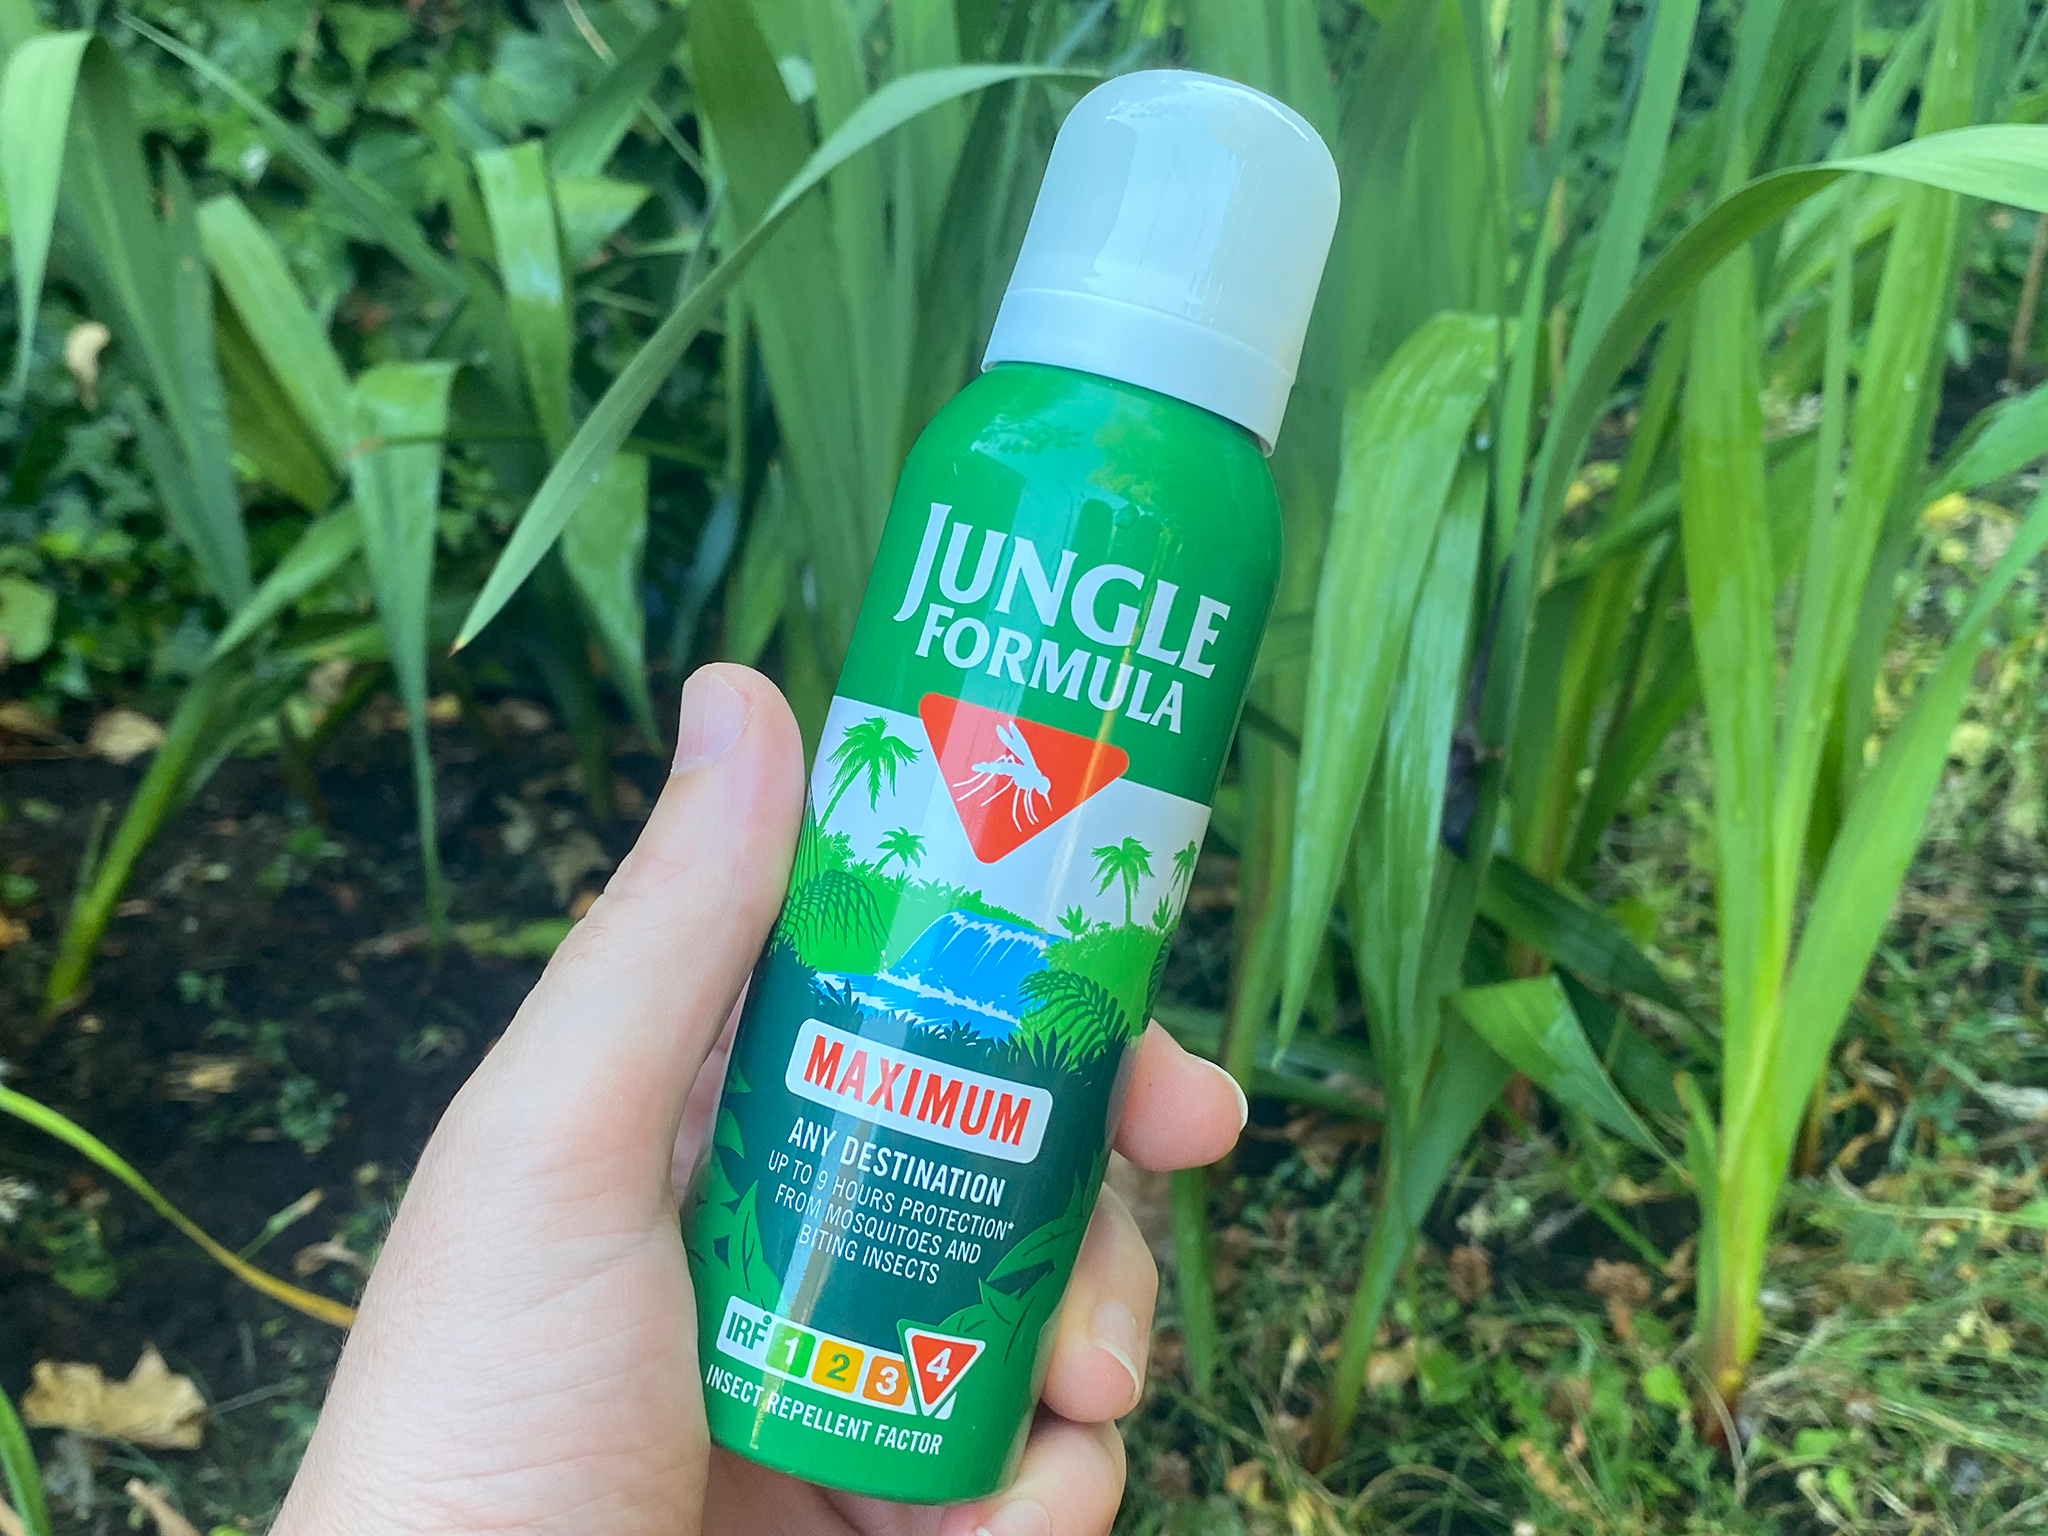 Jungle Formula maximum aerosol